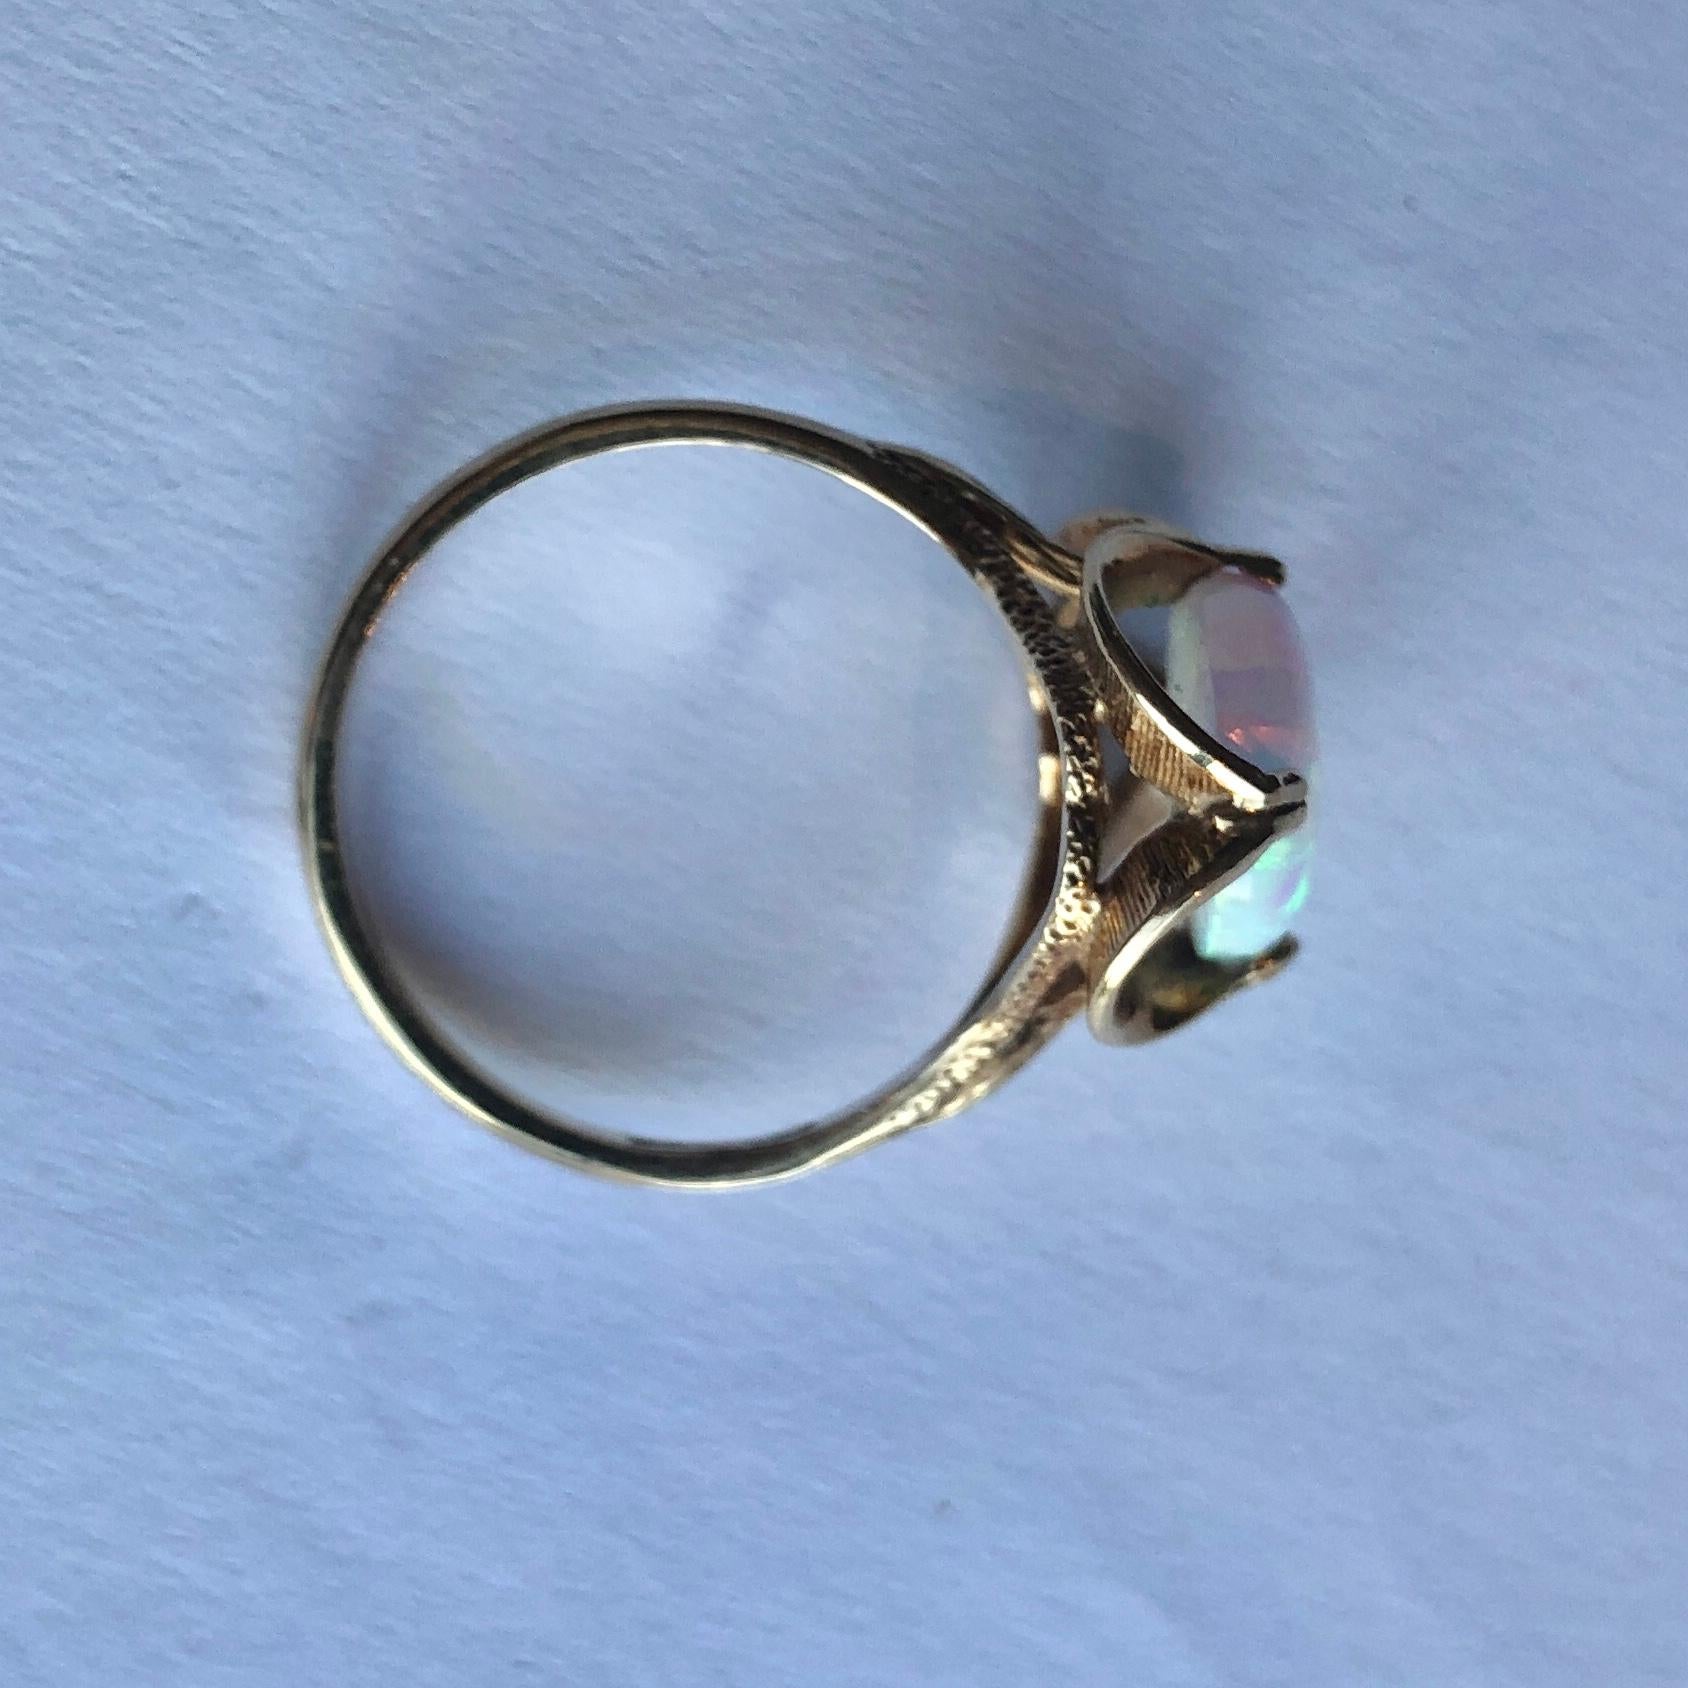 Ein wunderschöner, farbenprächtiger Opal sitzt in einer wunderschönen, gewellten Fassung. Der Ring ist aus 9-karätigem Gold modelliert und hat feine Gravuren auf der Galerie und den Schultern. Der Opal misst etwa 4ct. 

Ringgröße: R 1/2 oder 9